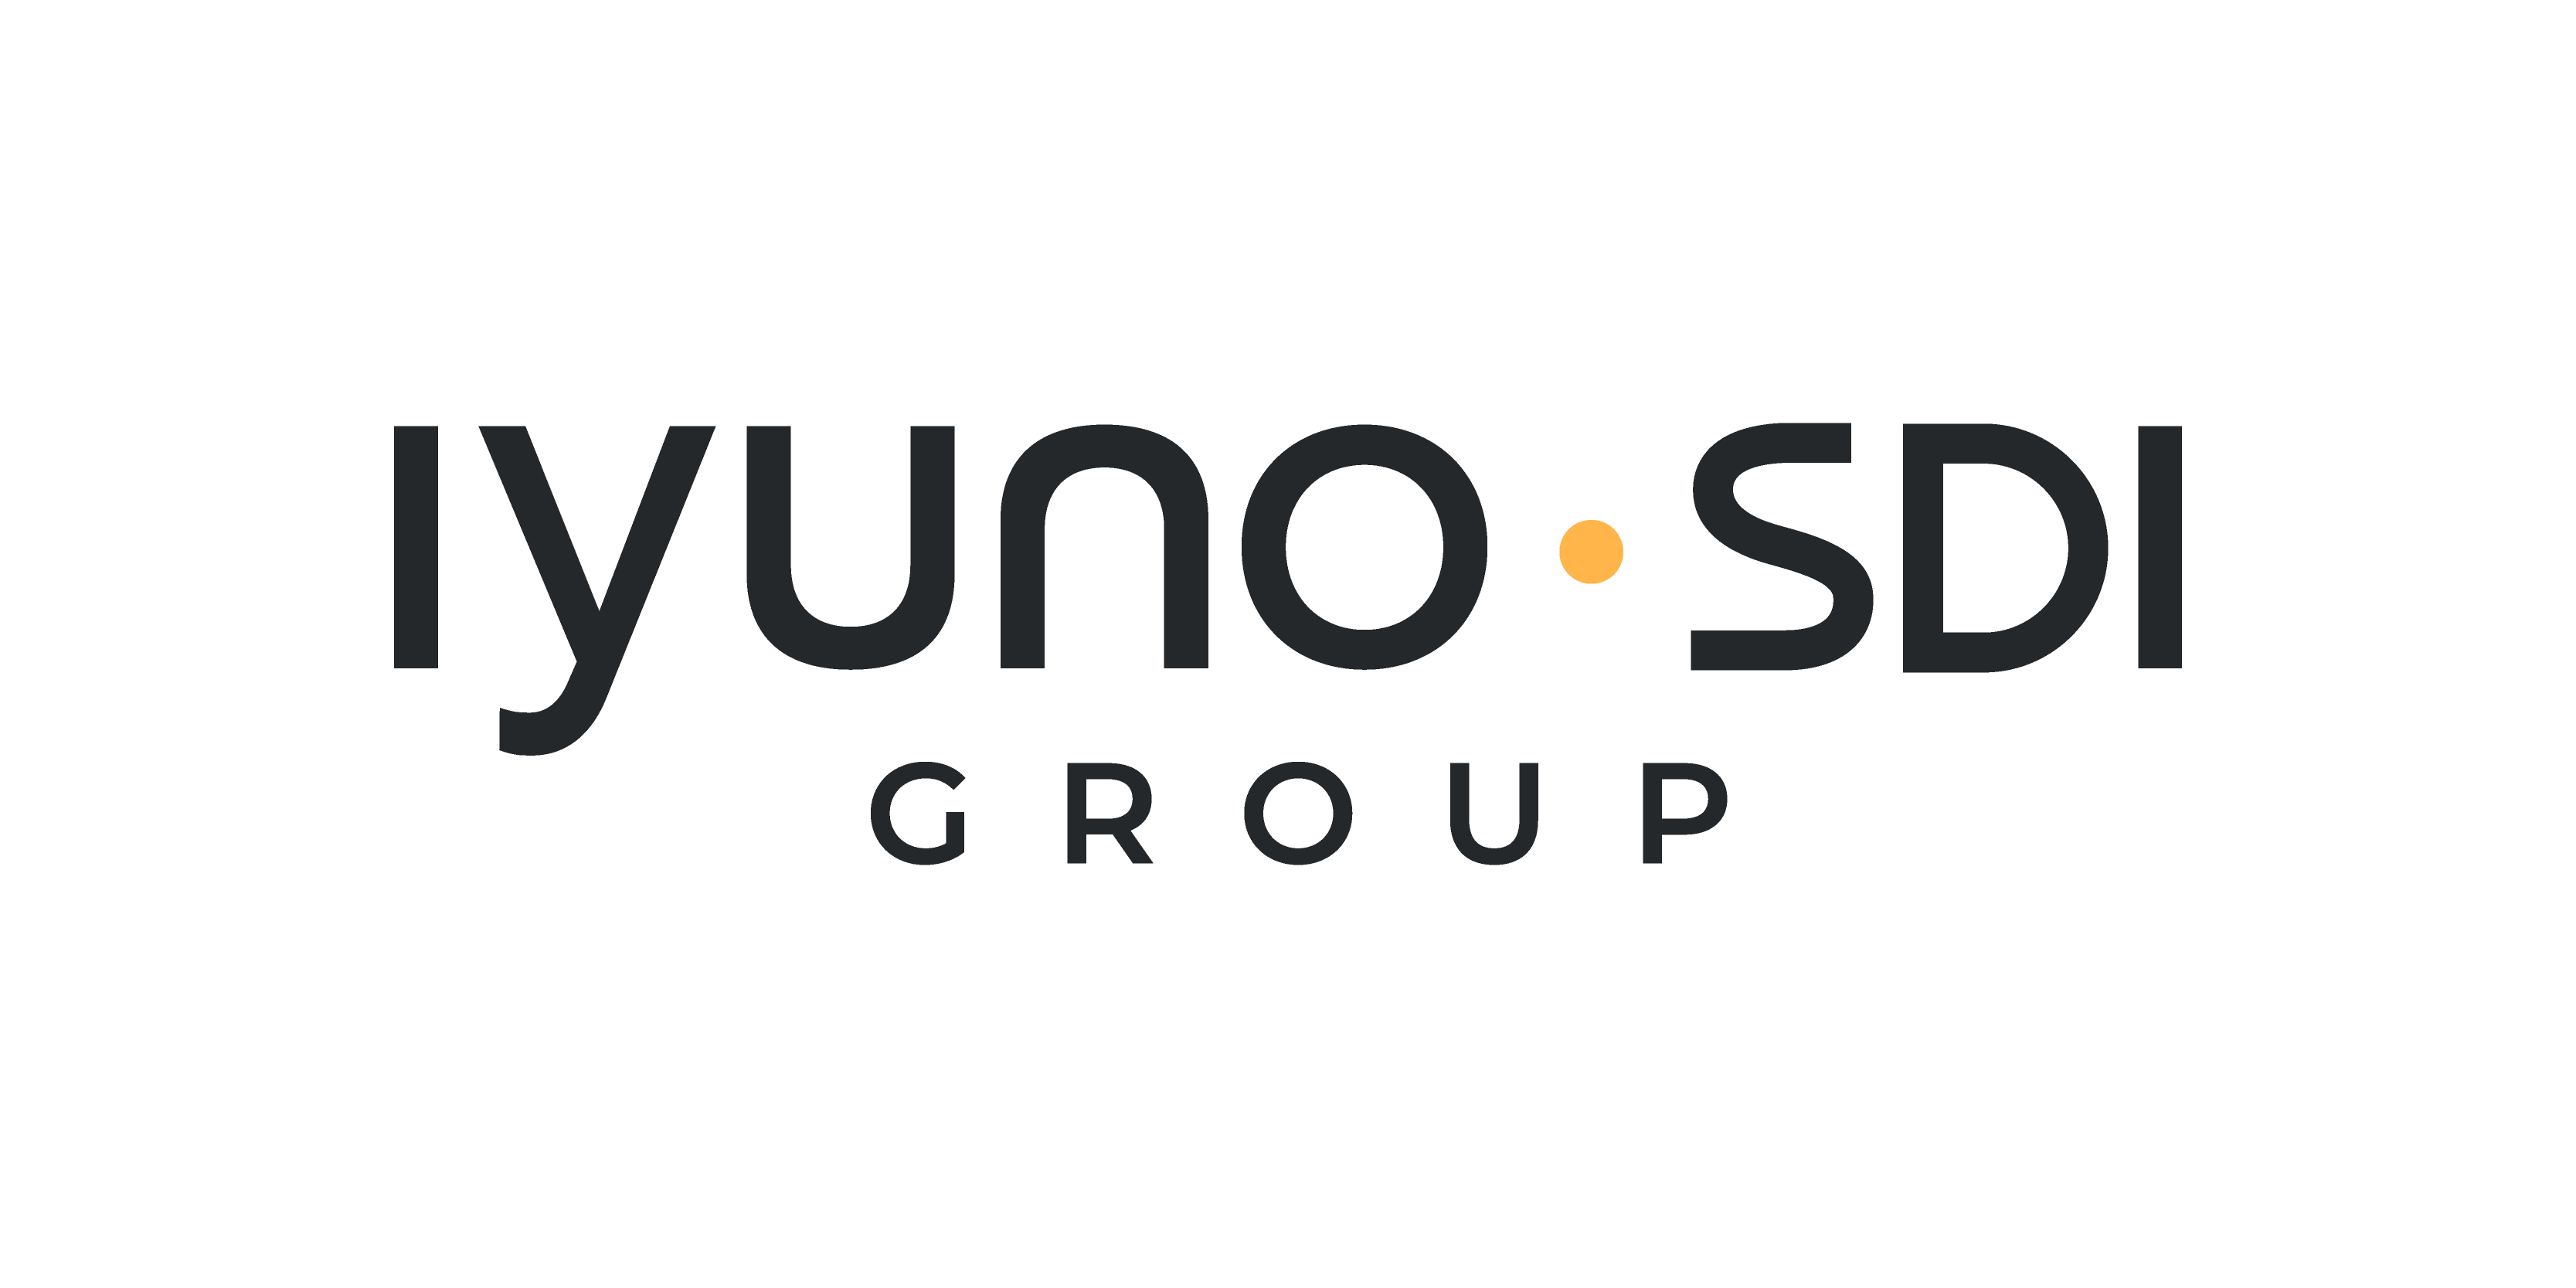 Bokningskoordinator sökes till Iyuno-SDI Group!